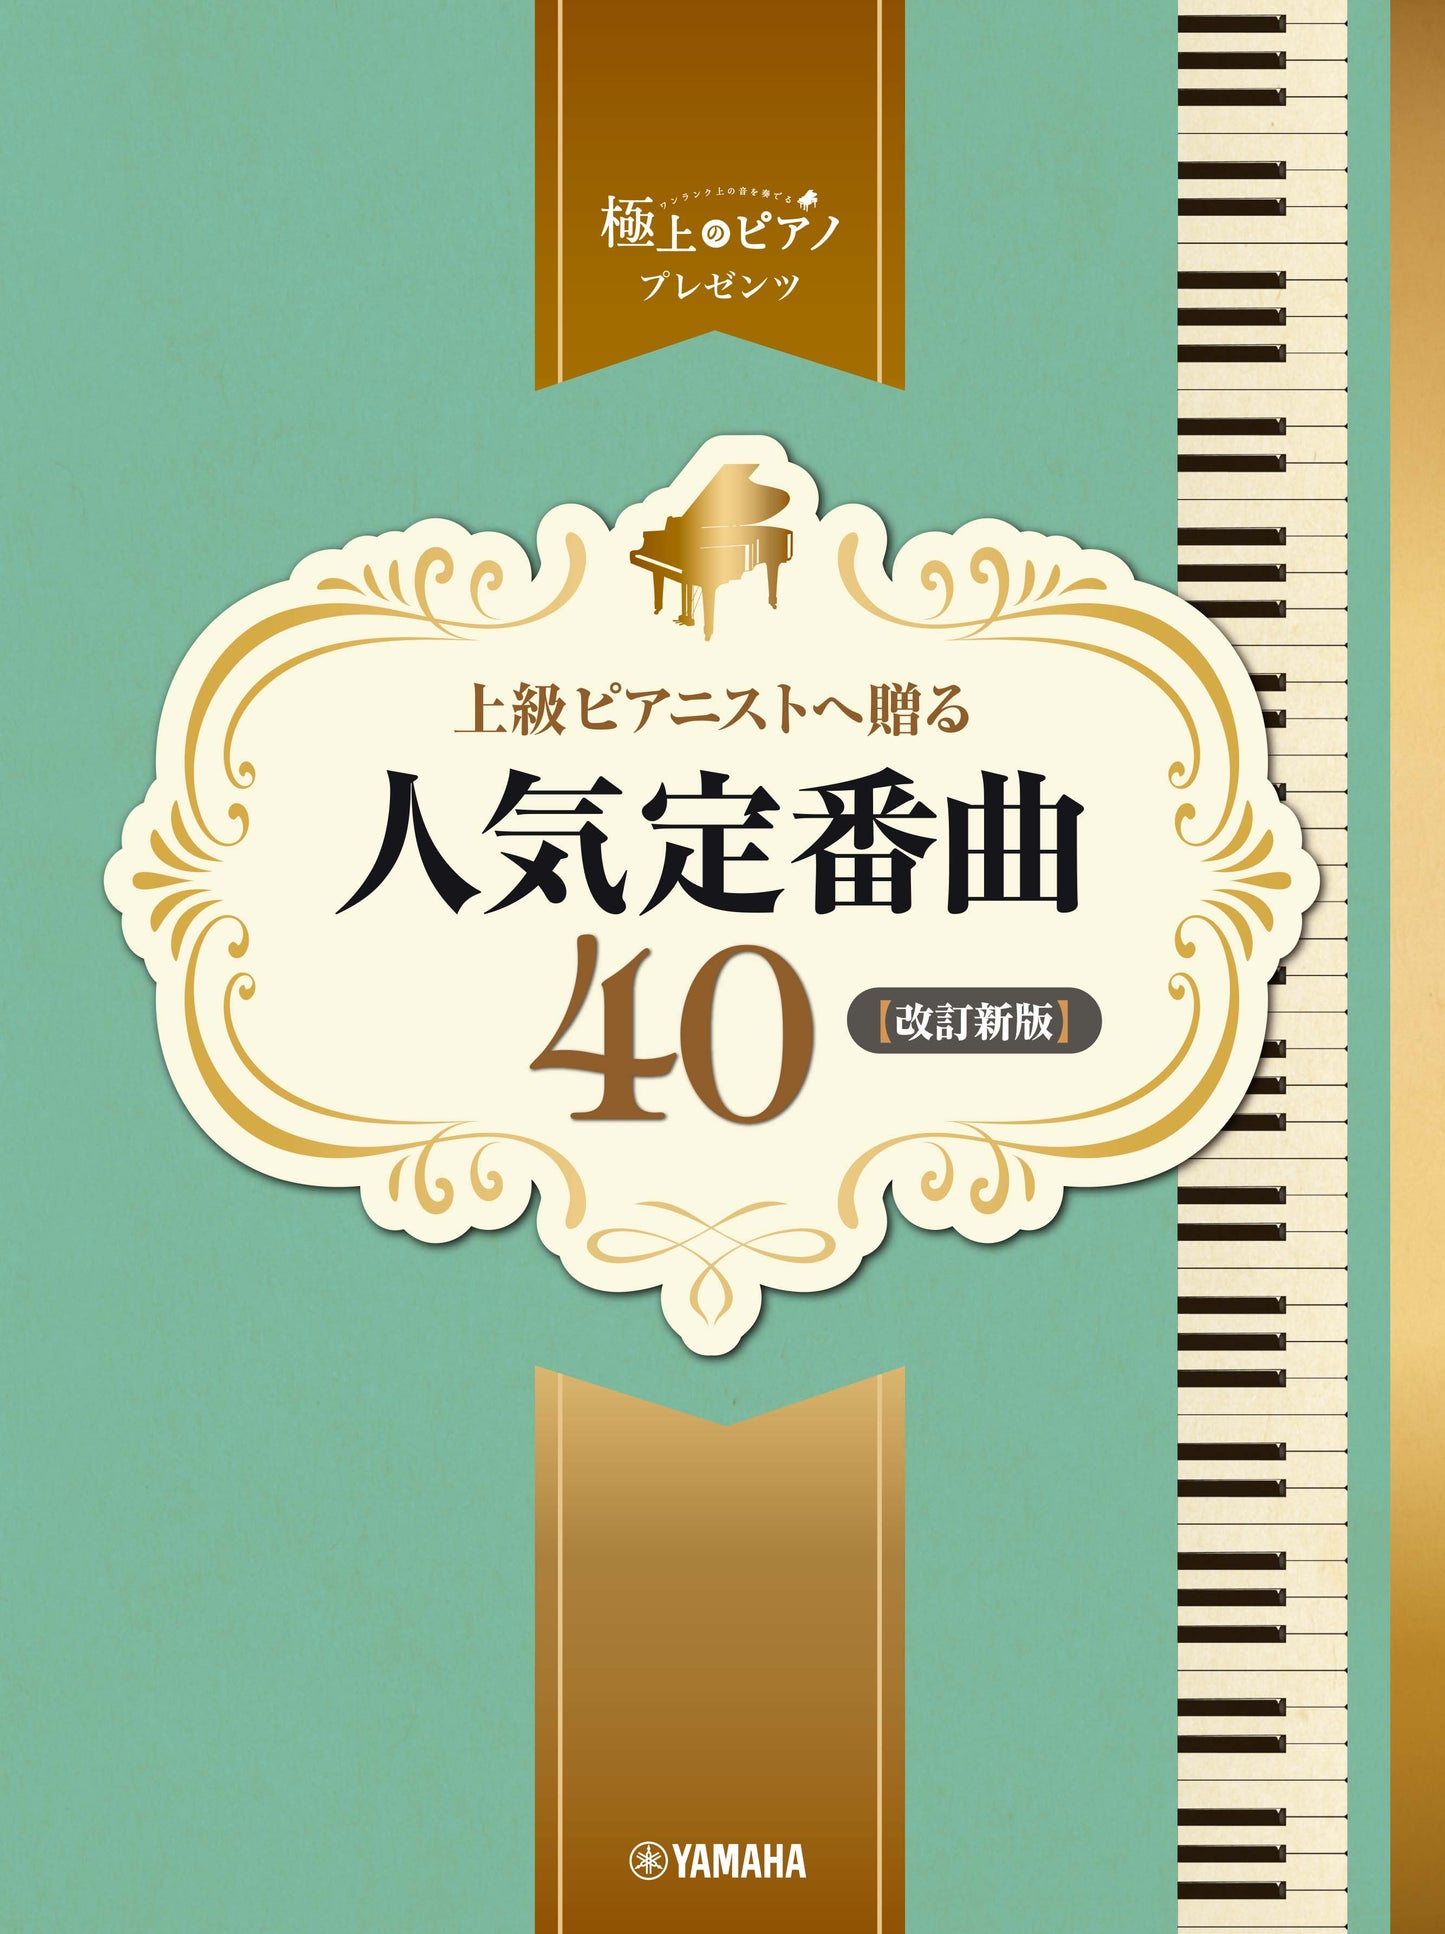 ピアノソロ 上級 極上のピアノプレゼンツ 上級ピアニストへ贈る人気定番曲40【改訂新版】 Default Title